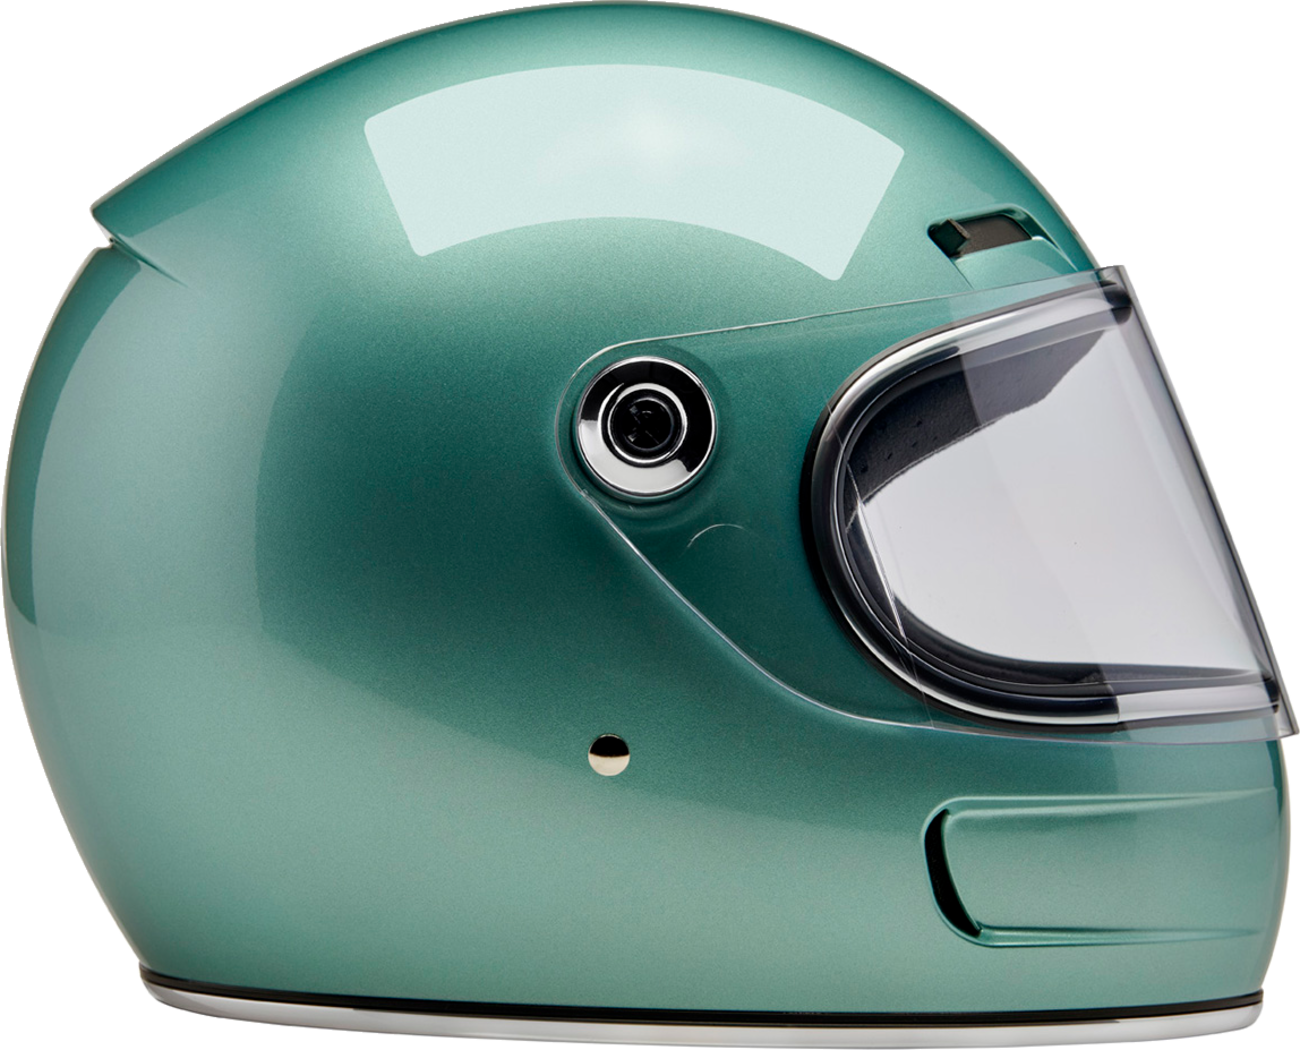 BILTWELL Gringo SV Helmet - Metallic Seafoam - Large 1006-313-504